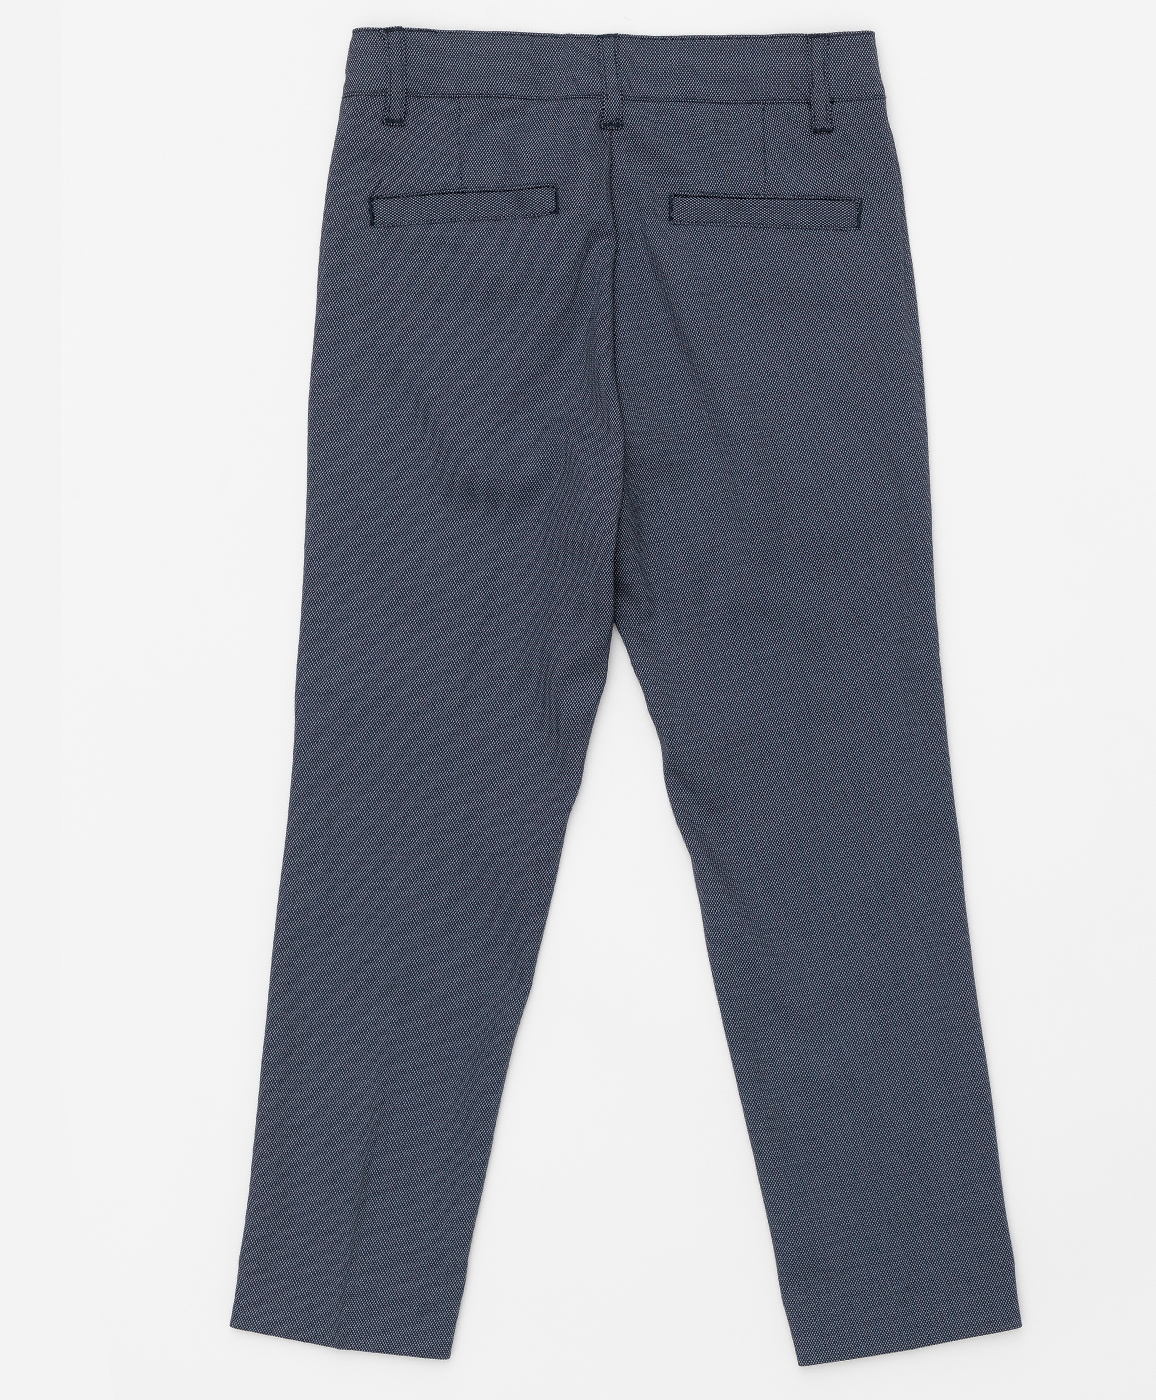 Серые брюки с узором "точка" Button Blue 220BBBMP63010800, размер 98, цвет серый regular fit / прямые - фото 2